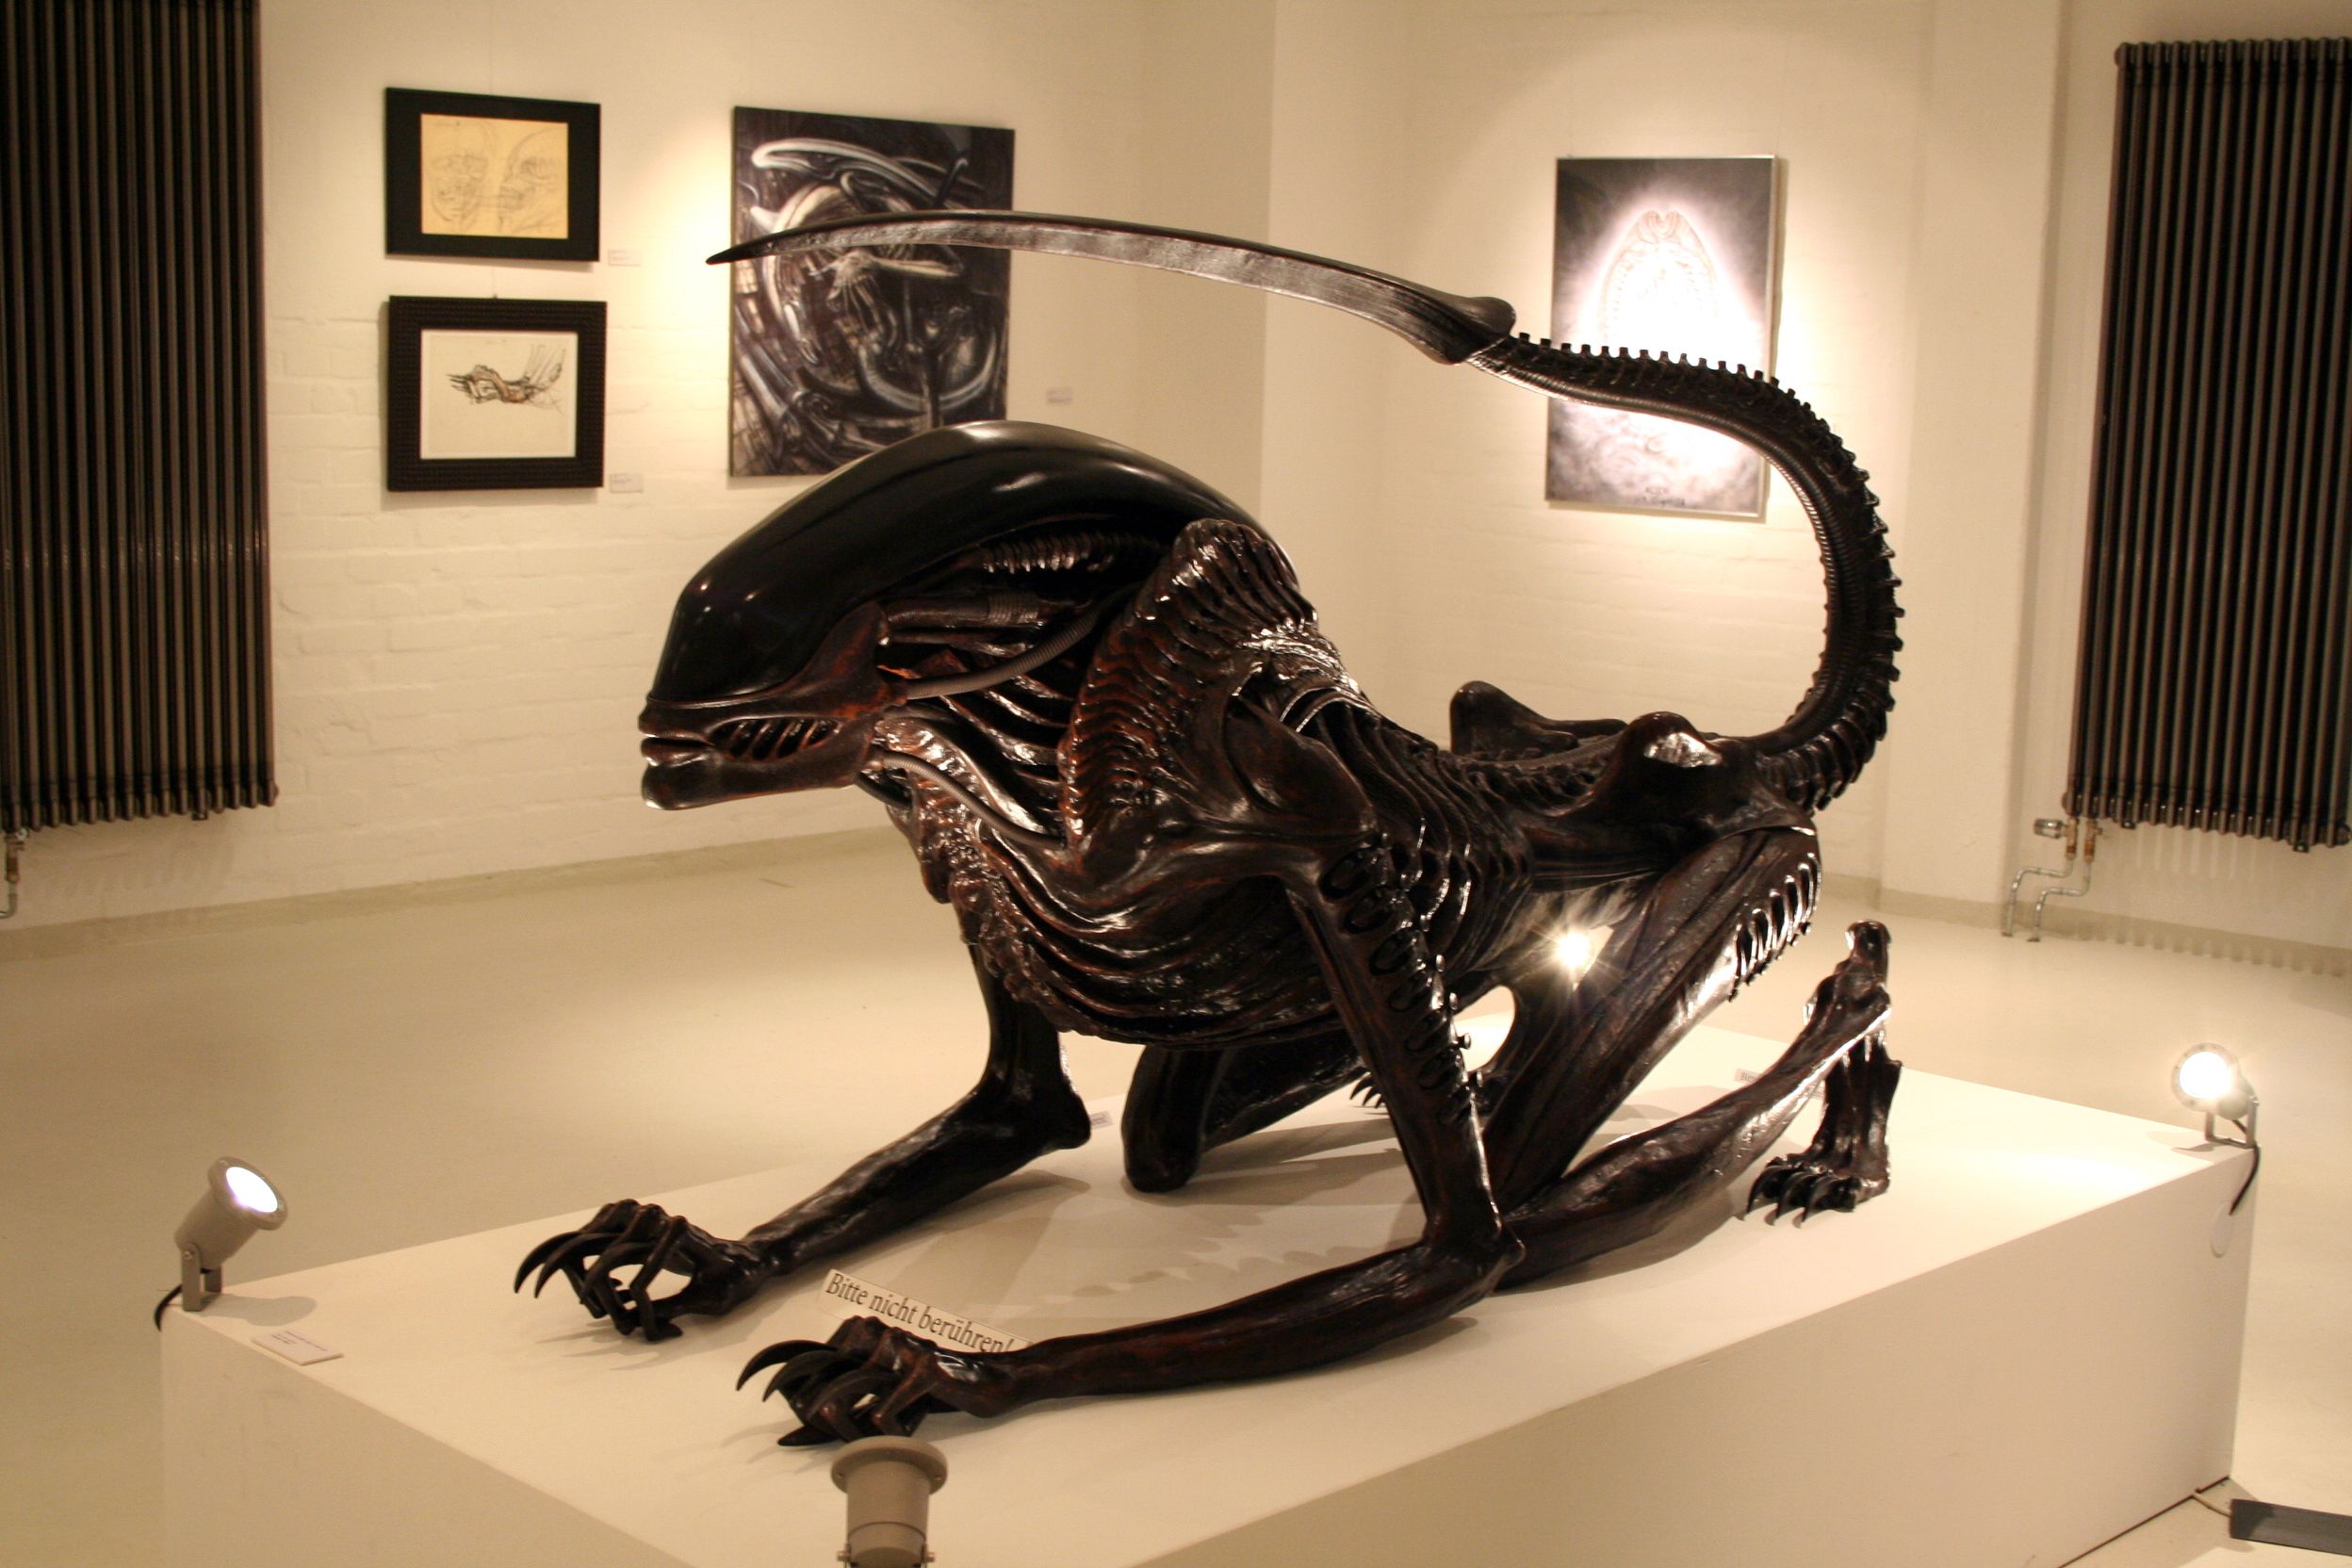 Die ikonische 'Alien'-Skulptur von H.R. Giger wird als NFTs fraktioniert